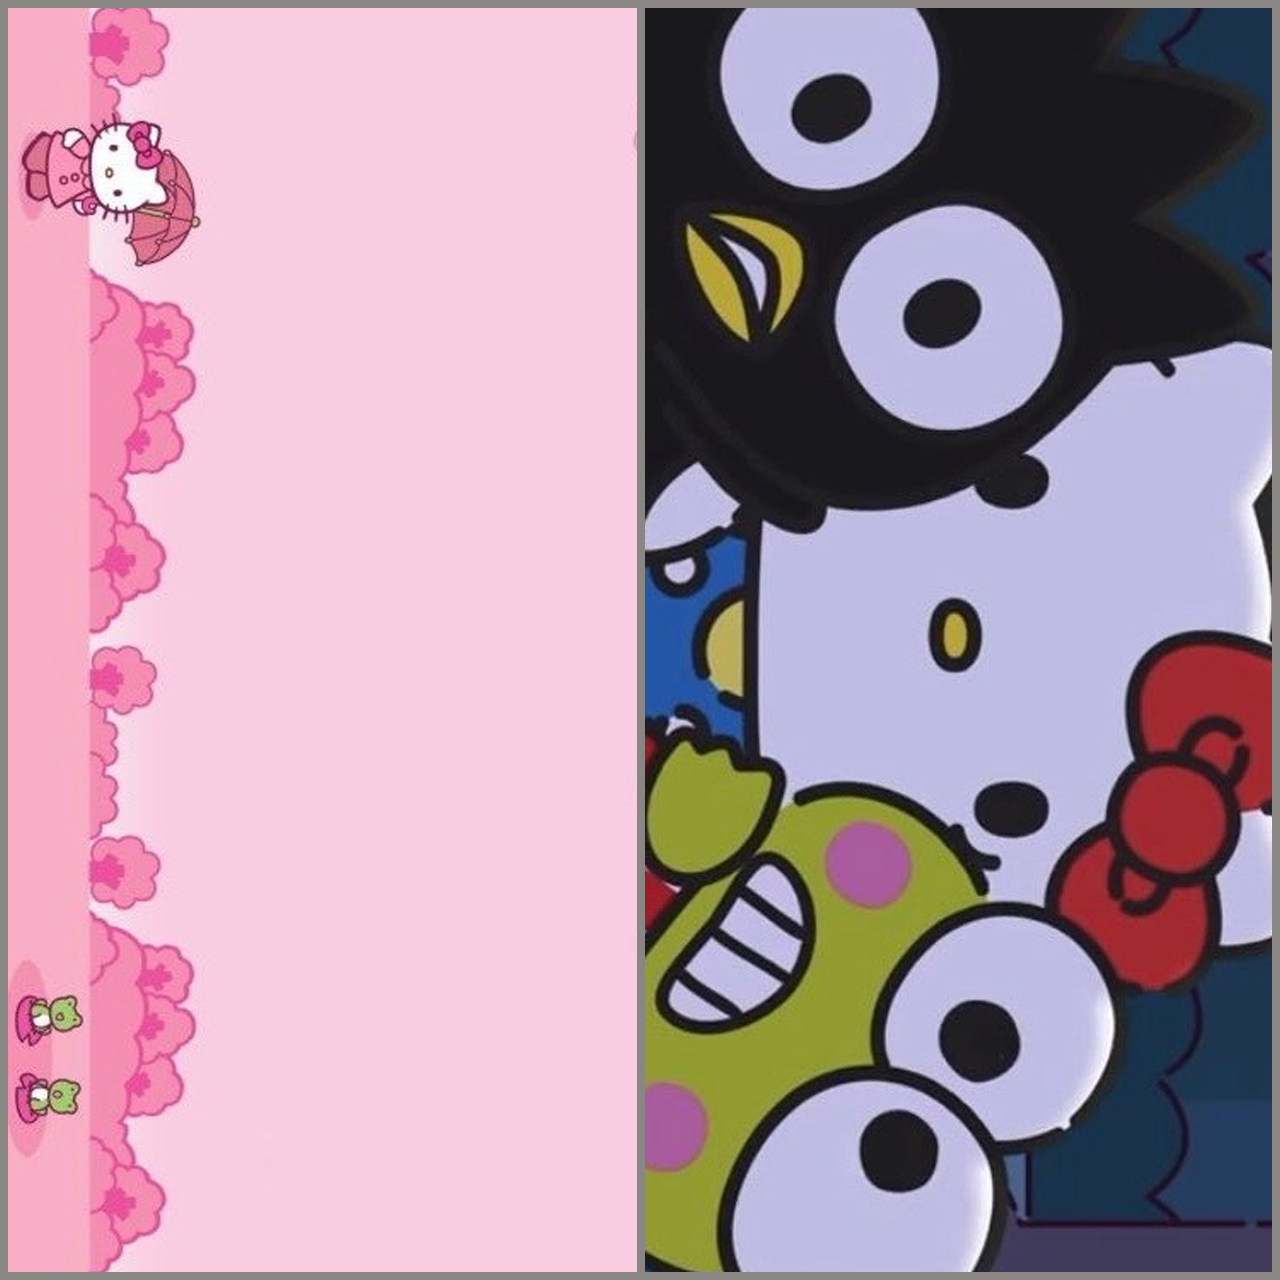 901+ Hình nền cute màu hồng cho bạn gái “cực xinh” | Dễ thương, Hình nền,  Kỳ ảo